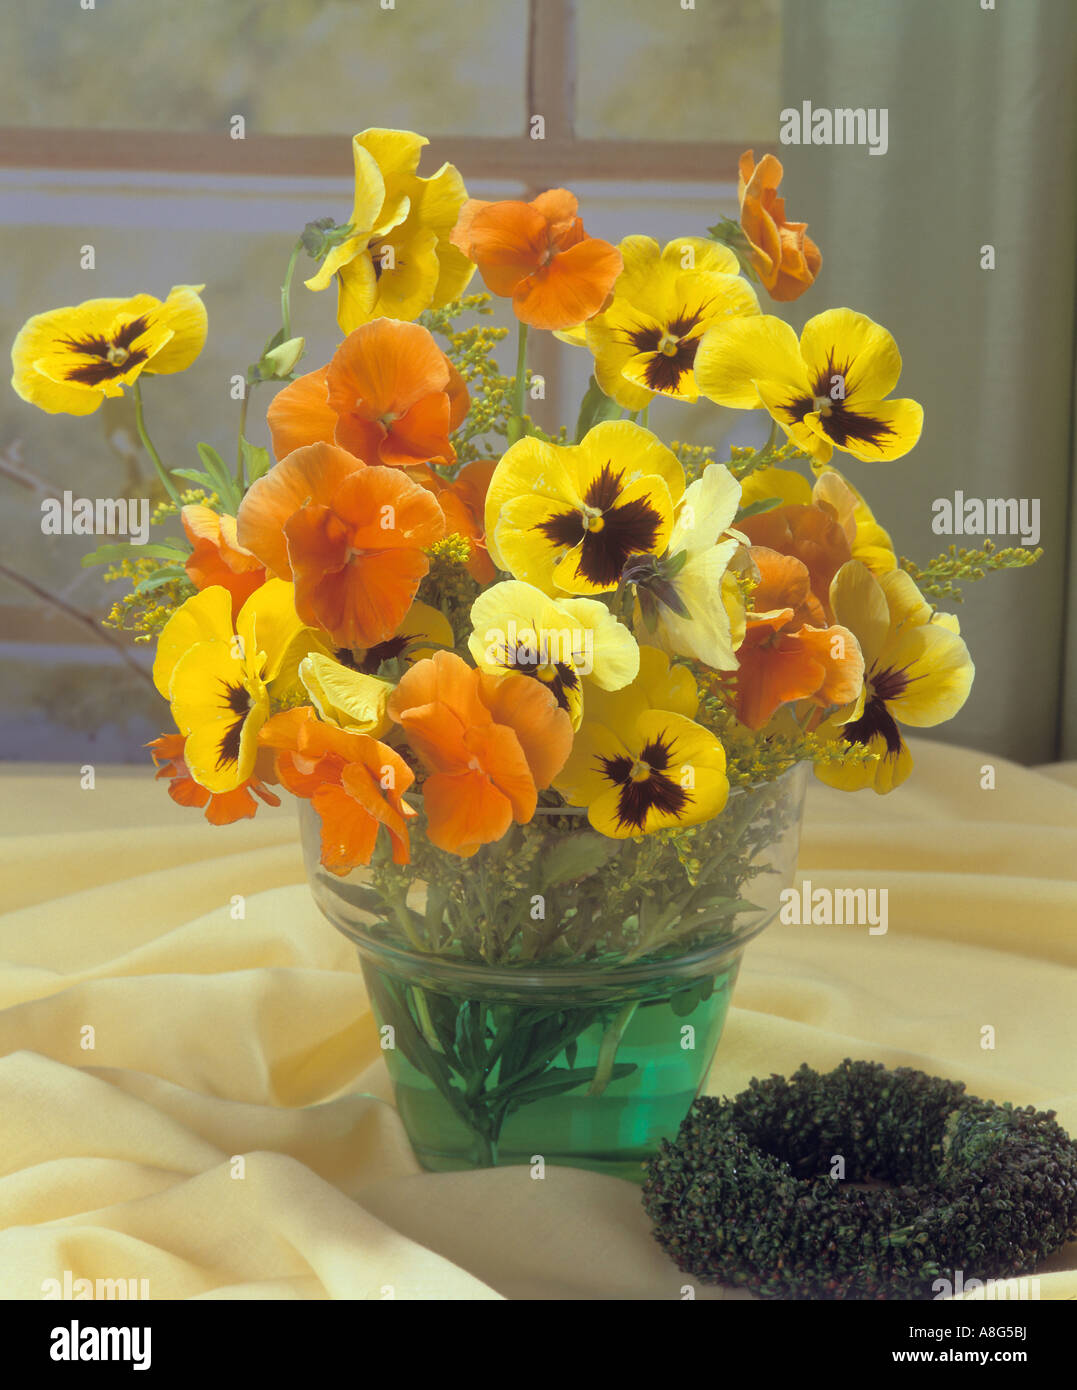 Bouquet de violettes avec pansy Banque D'Images